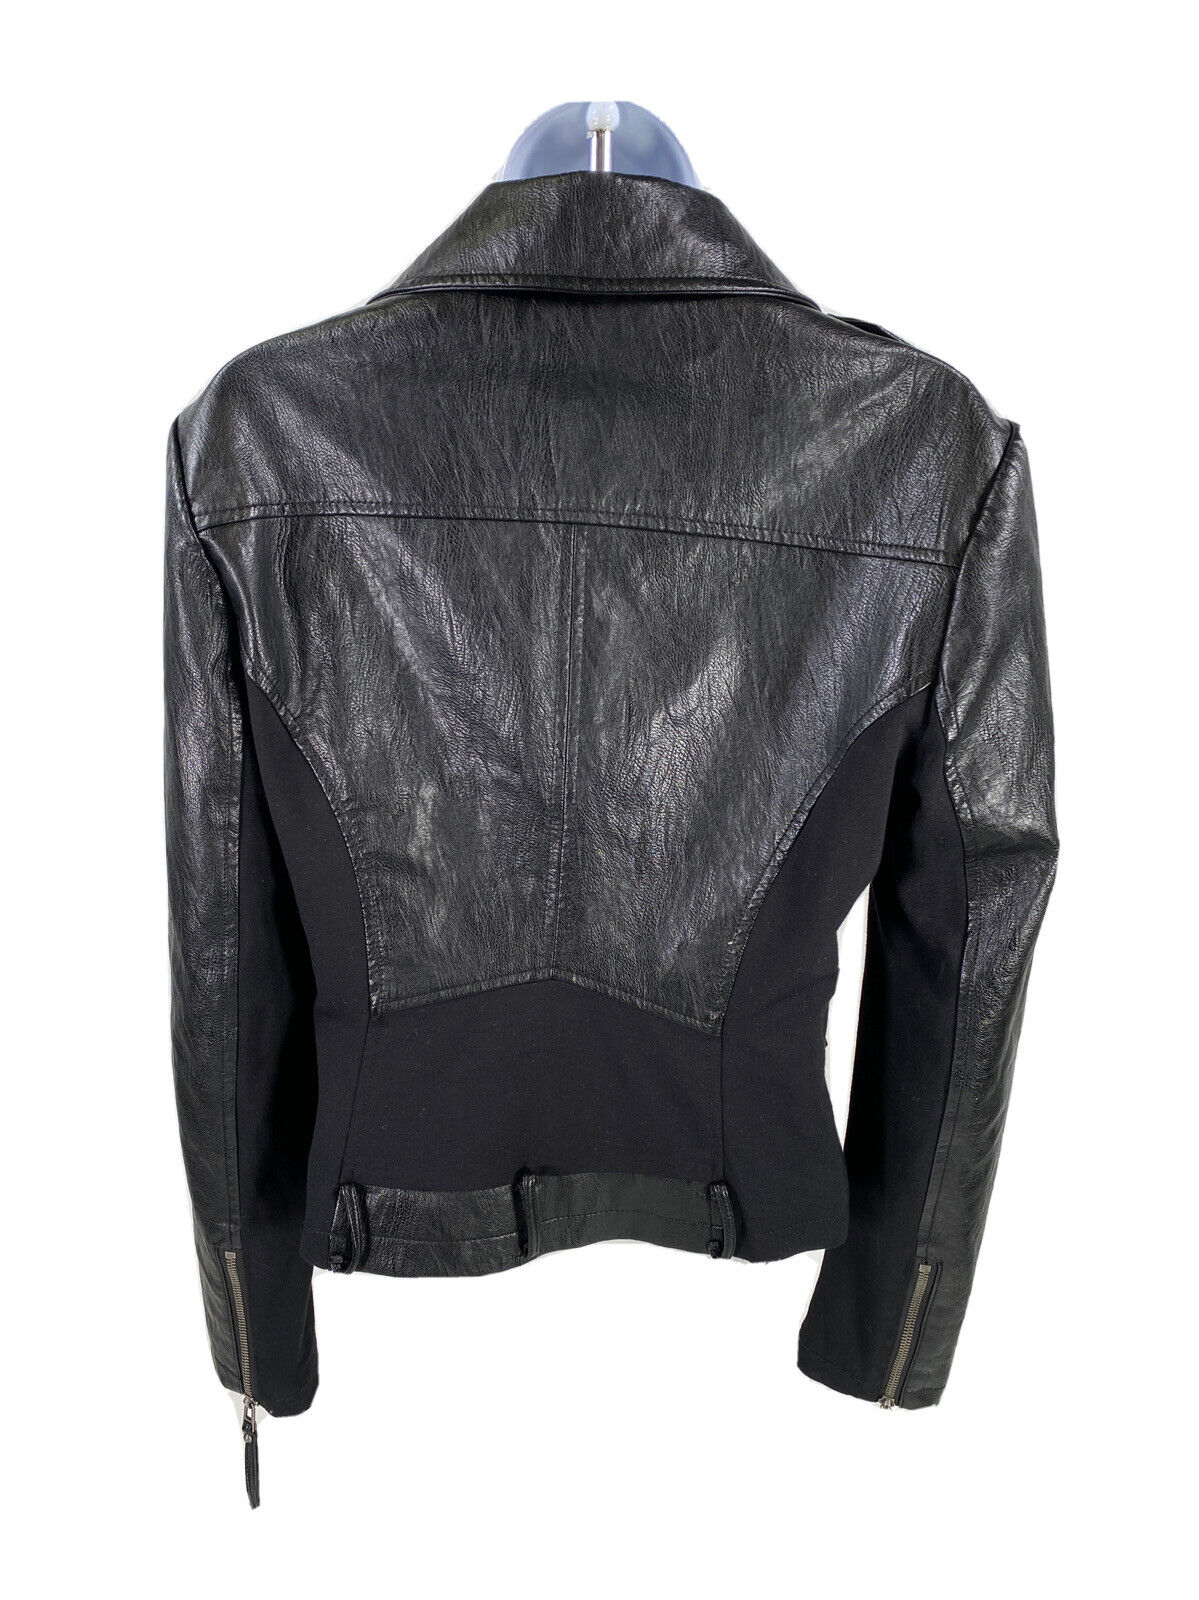 BNCI by Blanc Noir Women's Black Faux Leather Moto Jacket - M